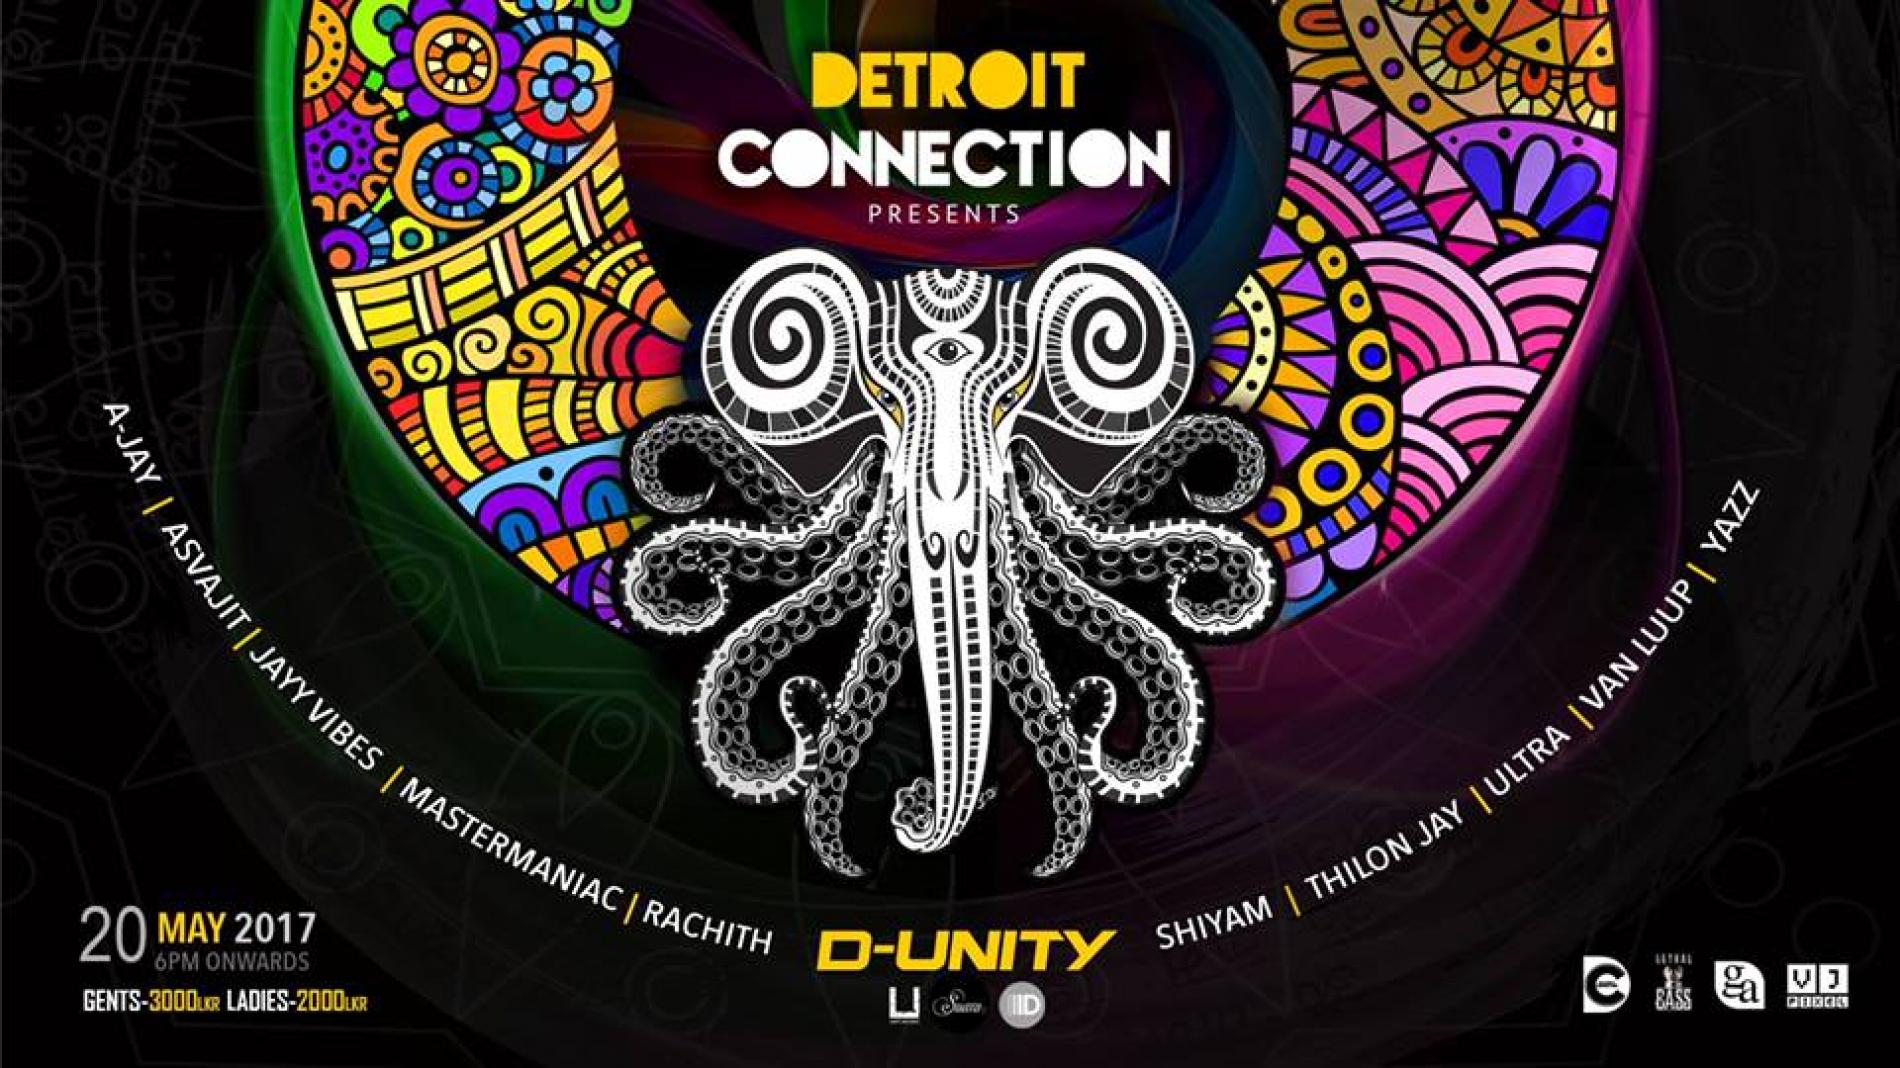 Detroit Connection Presents D-Unity